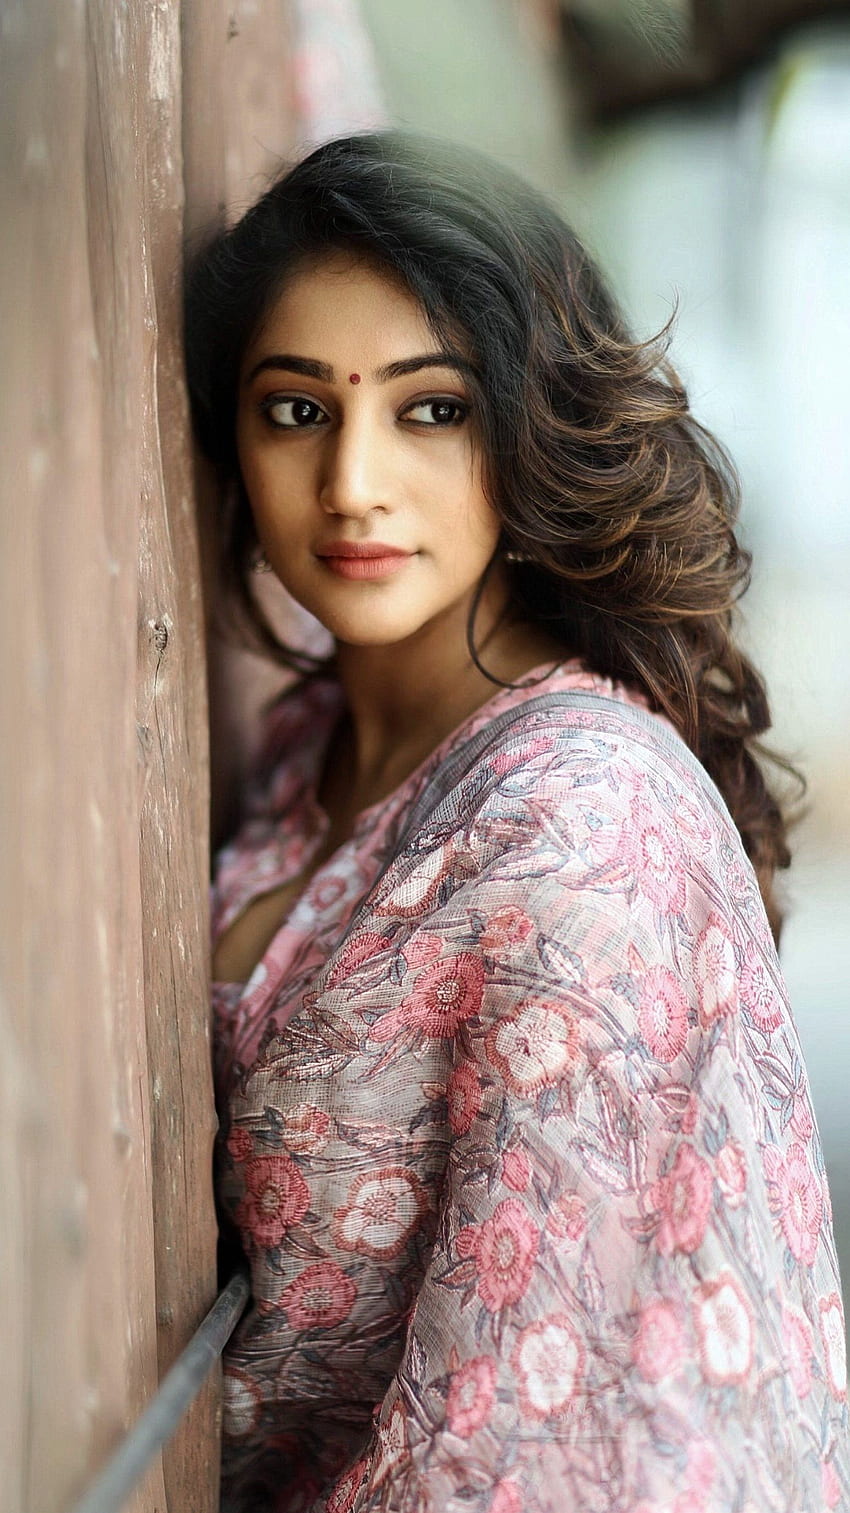 Bommu Lakshmi , actrice telugu, amoureuse des saris Fond d'écran de téléphone HD